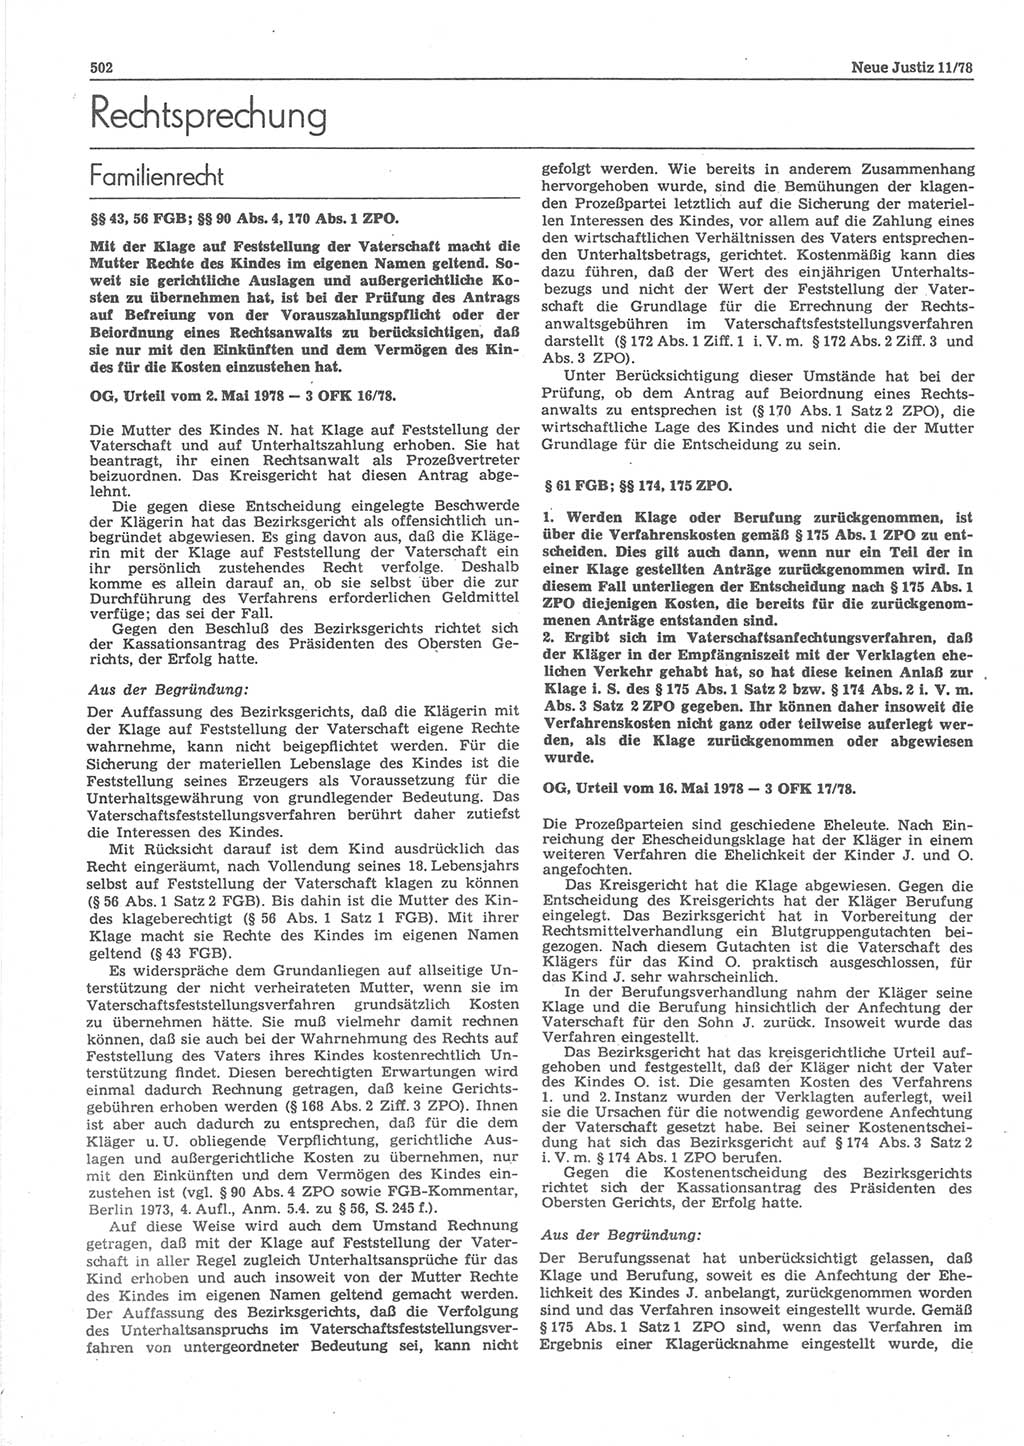 Neue Justiz (NJ), Zeitschrift für sozialistisches Recht und Gesetzlichkeit [Deutsche Demokratische Republik (DDR)], 32. Jahrgang 1978, Seite 502 (NJ DDR 1978, S. 502)